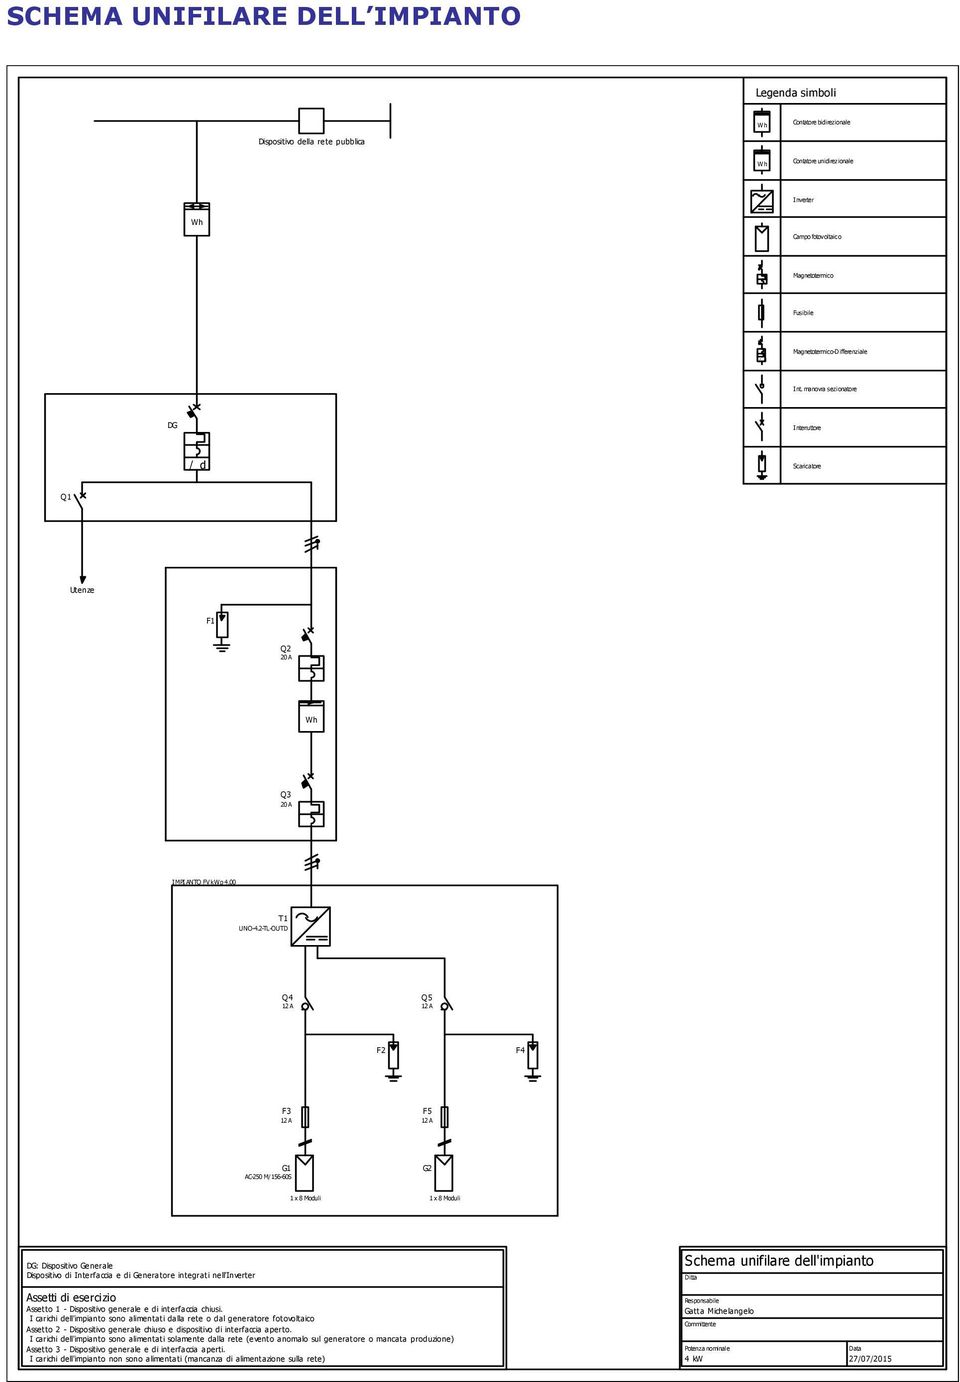 2-TL-OUTD Q4 12 A Q5 12 A F2 F4 F3 12 A F5 12 A G1 AC-250 M/156-60S G2 1 x 8 Moduli 1 x 8 Moduli DG: Dispositivo Generale Dispositivo di Interfaccia e di Generatore integrati nell'inverter Schema